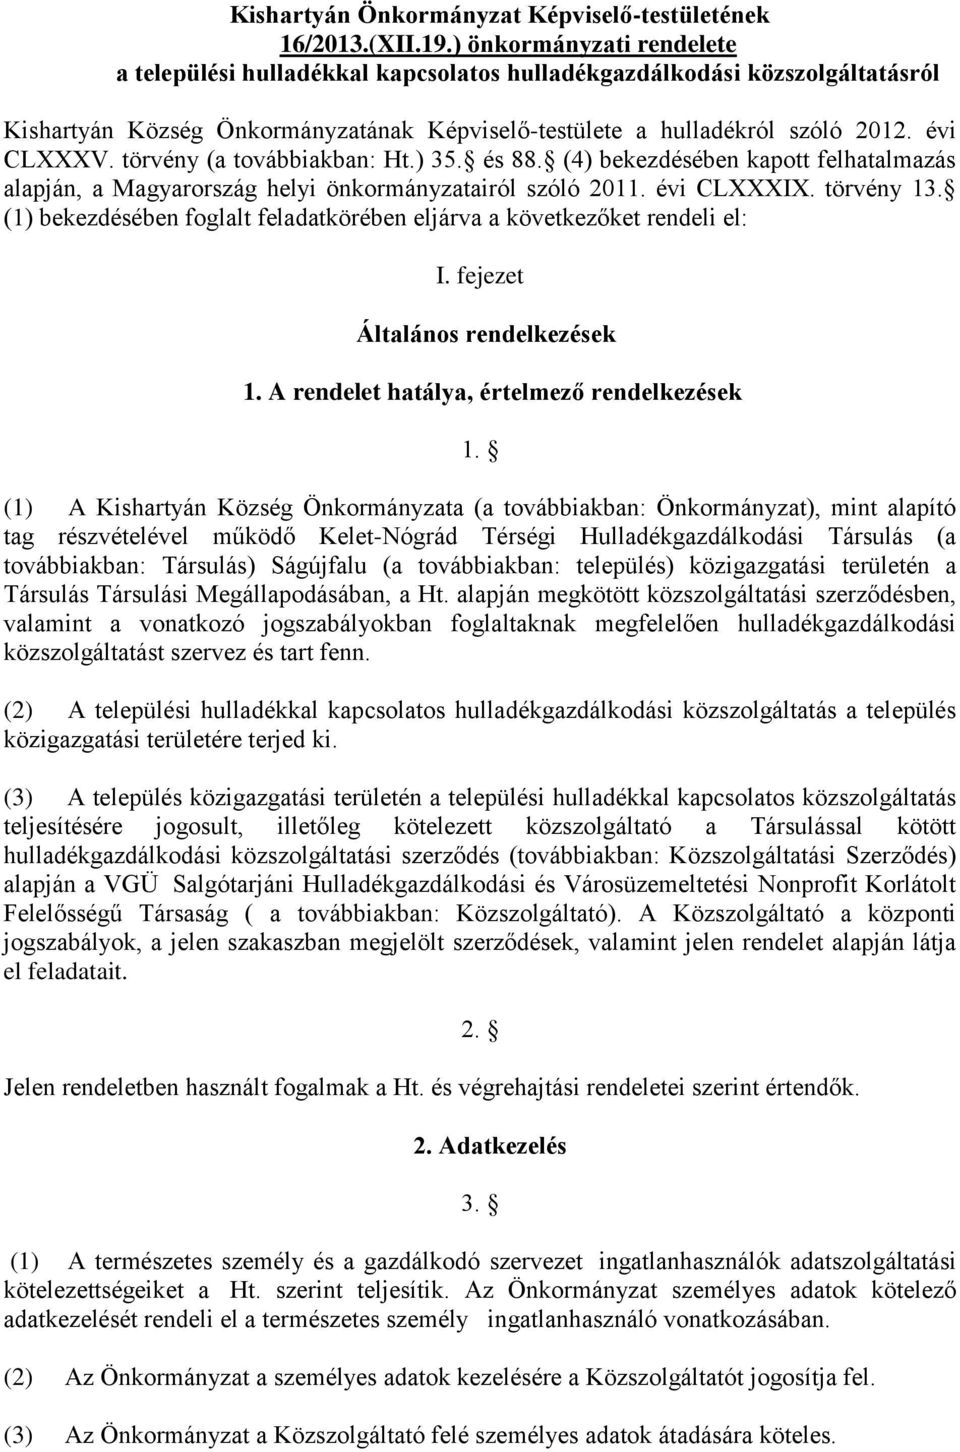 törvény (a továbbiakban: Ht.) 35. és 88. (4) bekezdésében kapott felhatalmazás alapján, a Magyarország helyi önkormányzatairól szóló 2011. évi CLXXXIX. törvény 13.